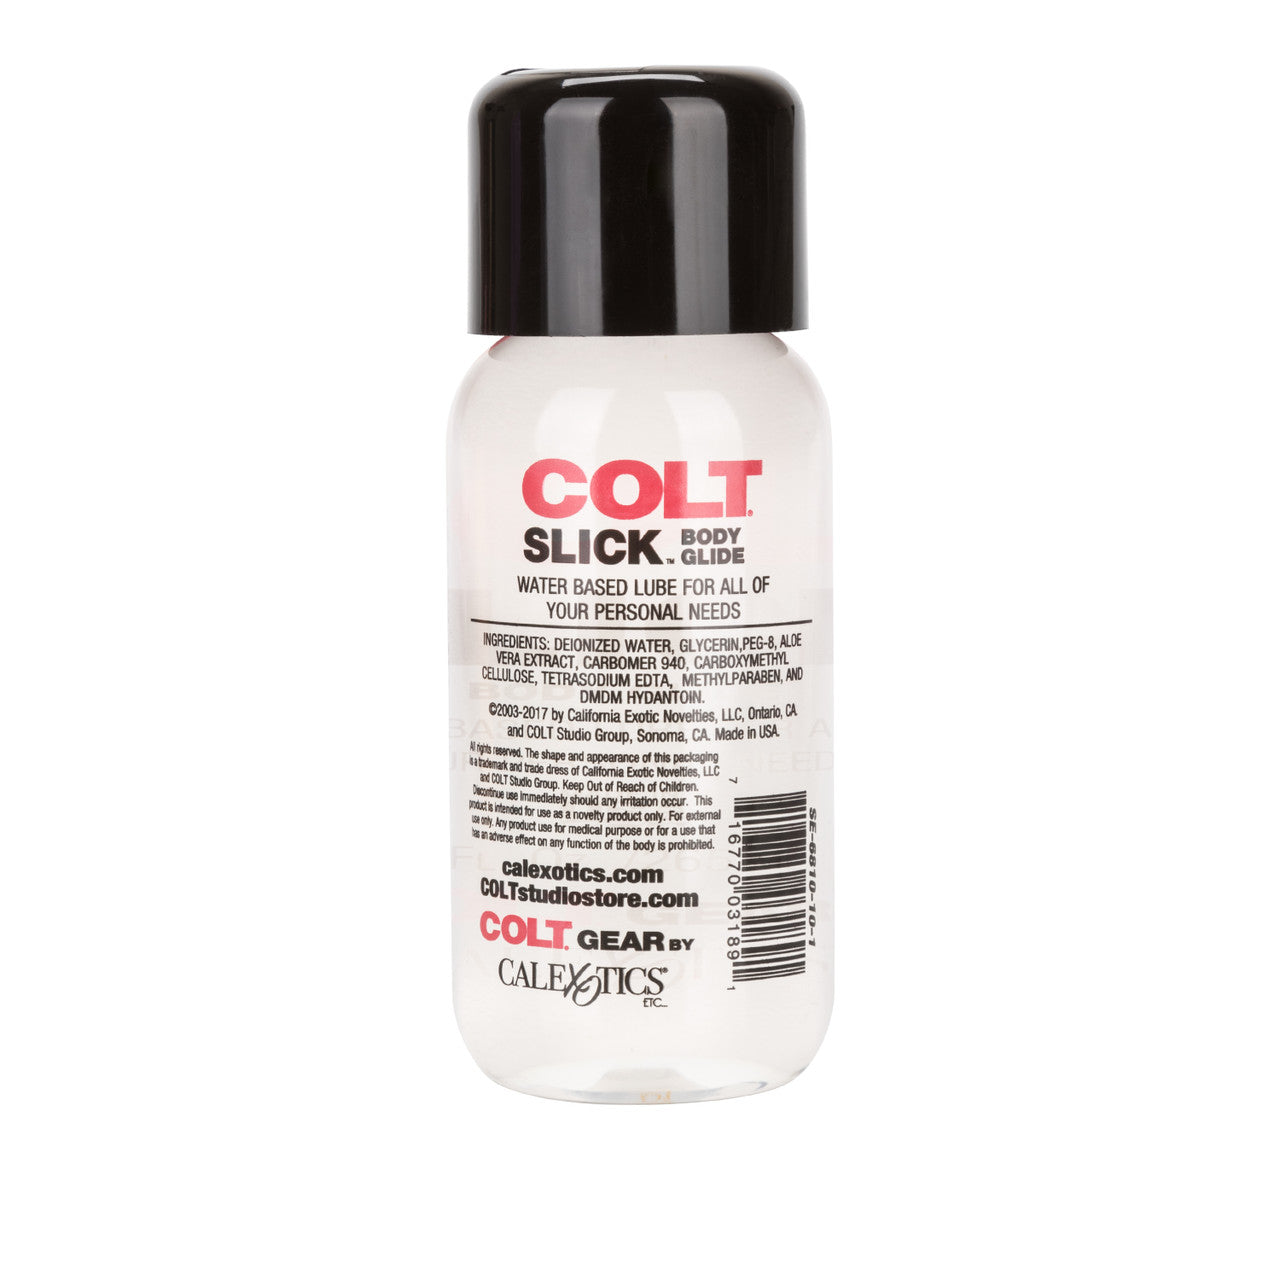 COLT® Slick™ Body Glide 8.9oz